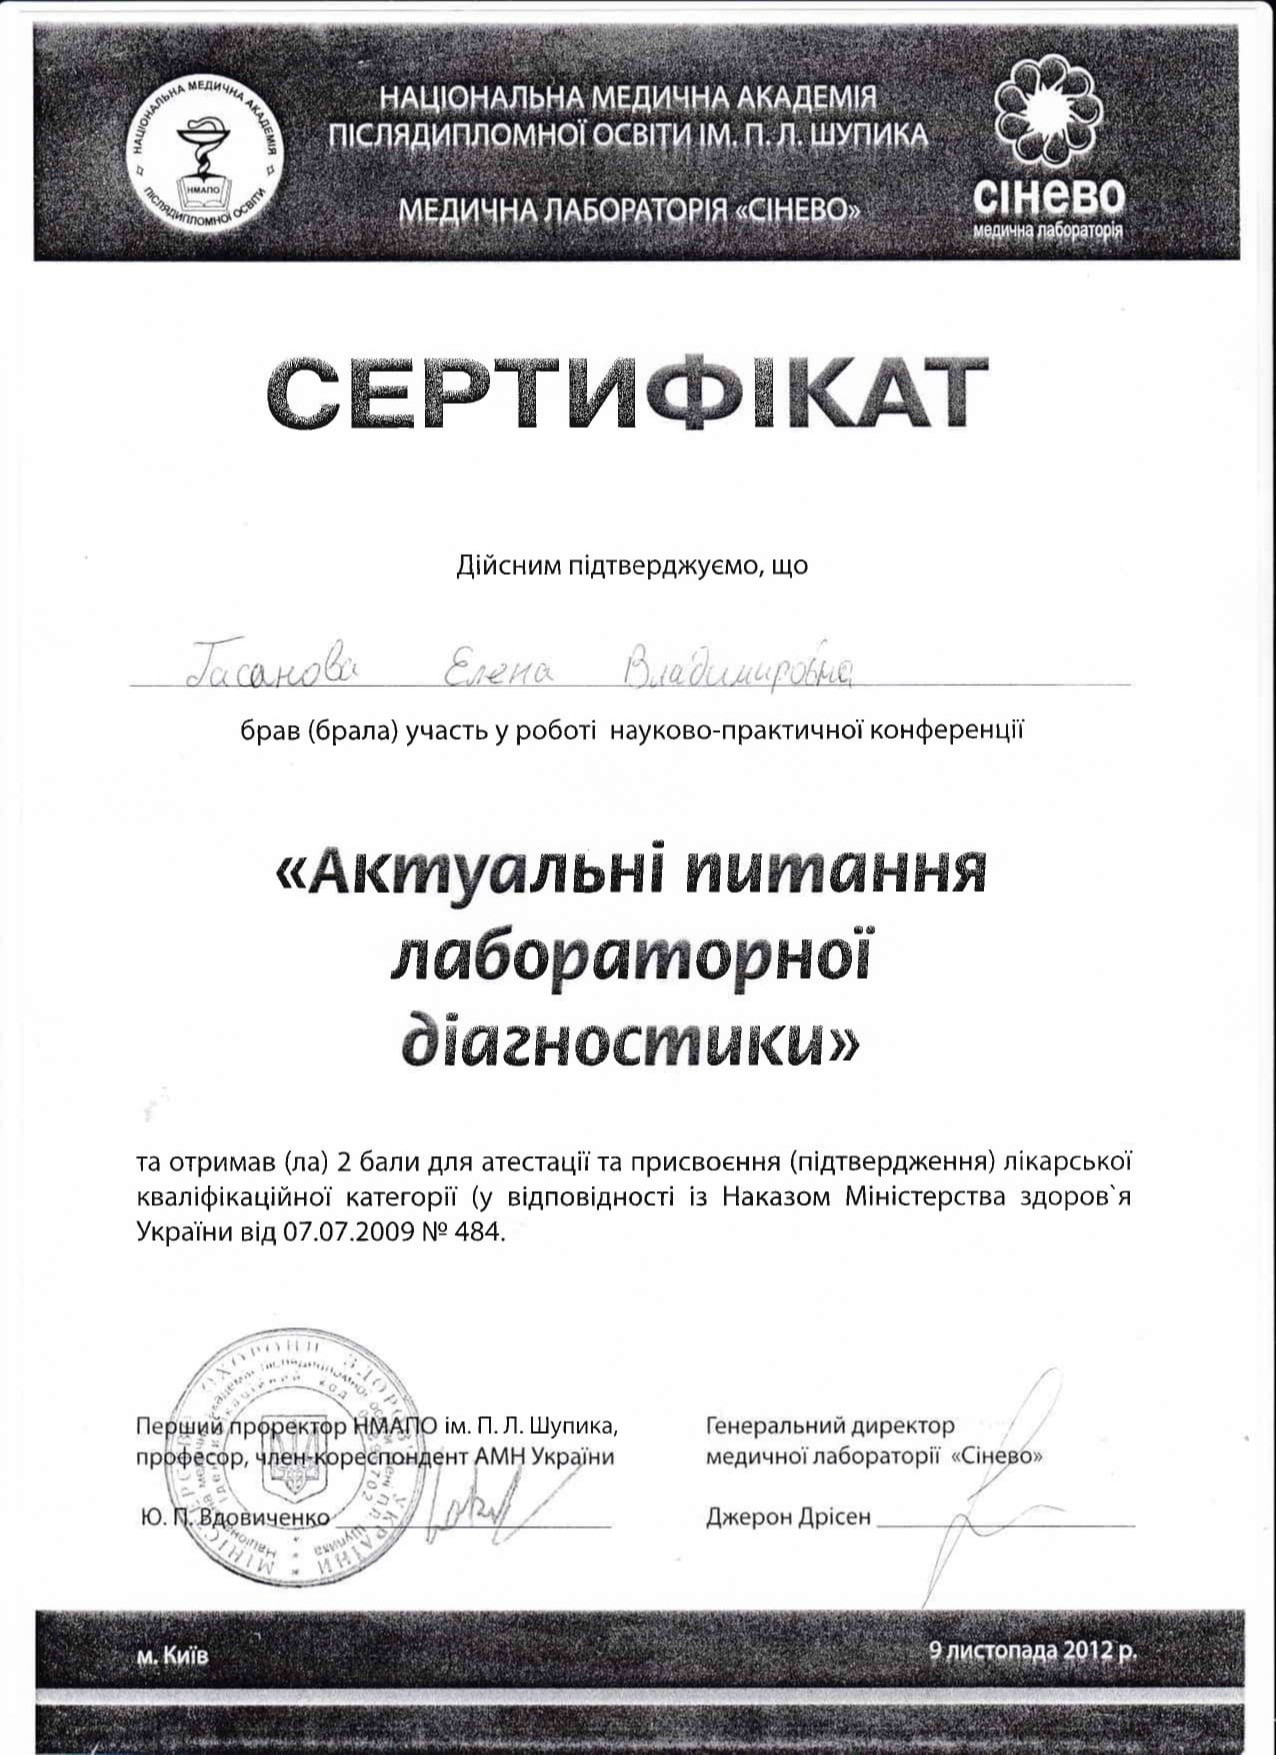 Сертификат об участии в научно-практической конференции 